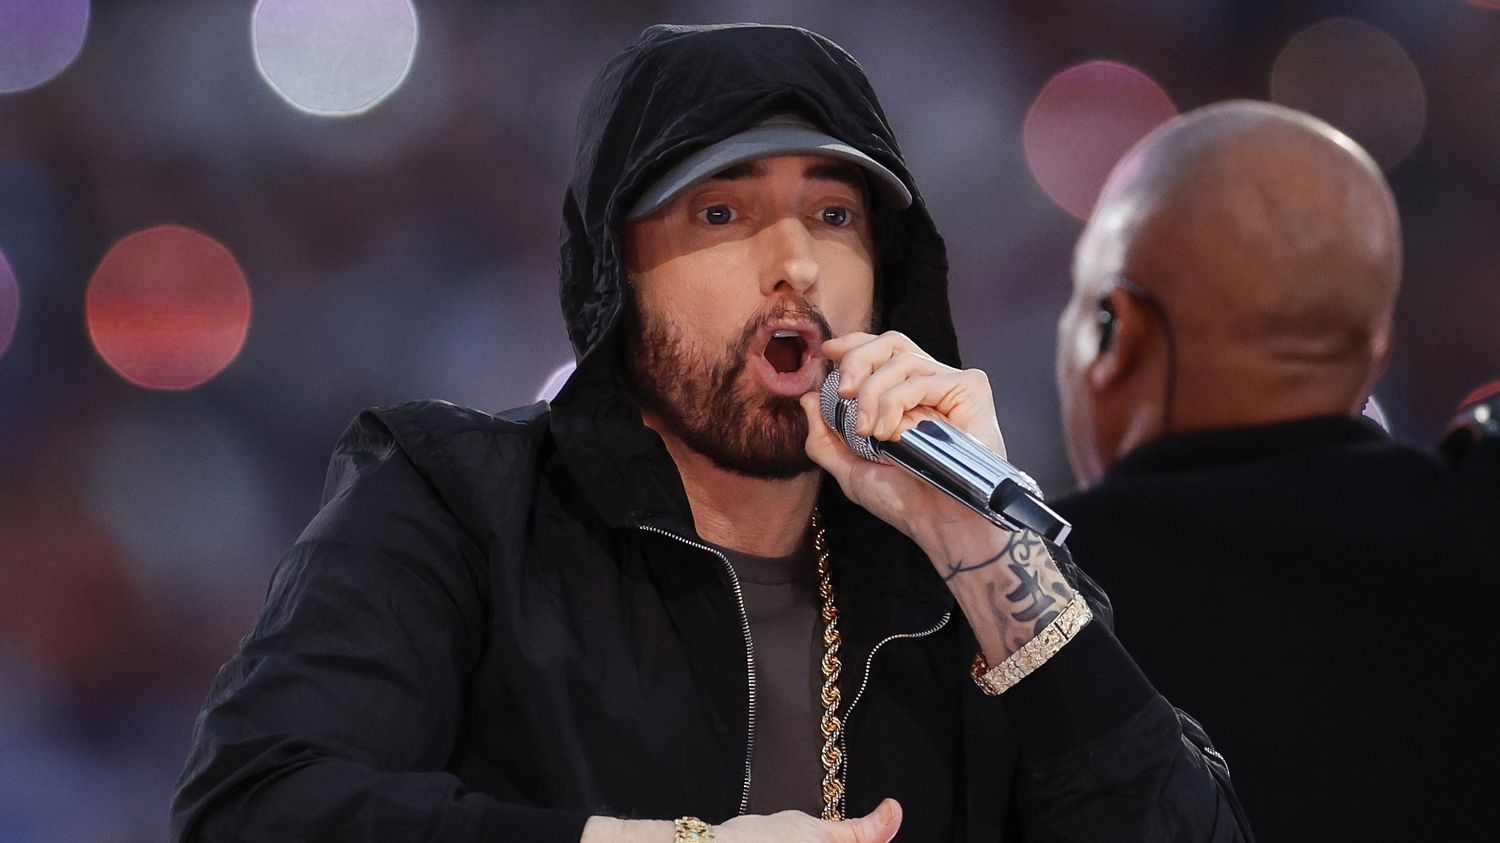 Le rappeur Eminem annonce la sortie d'un album pour cet été, "The Death of Slim Shady"